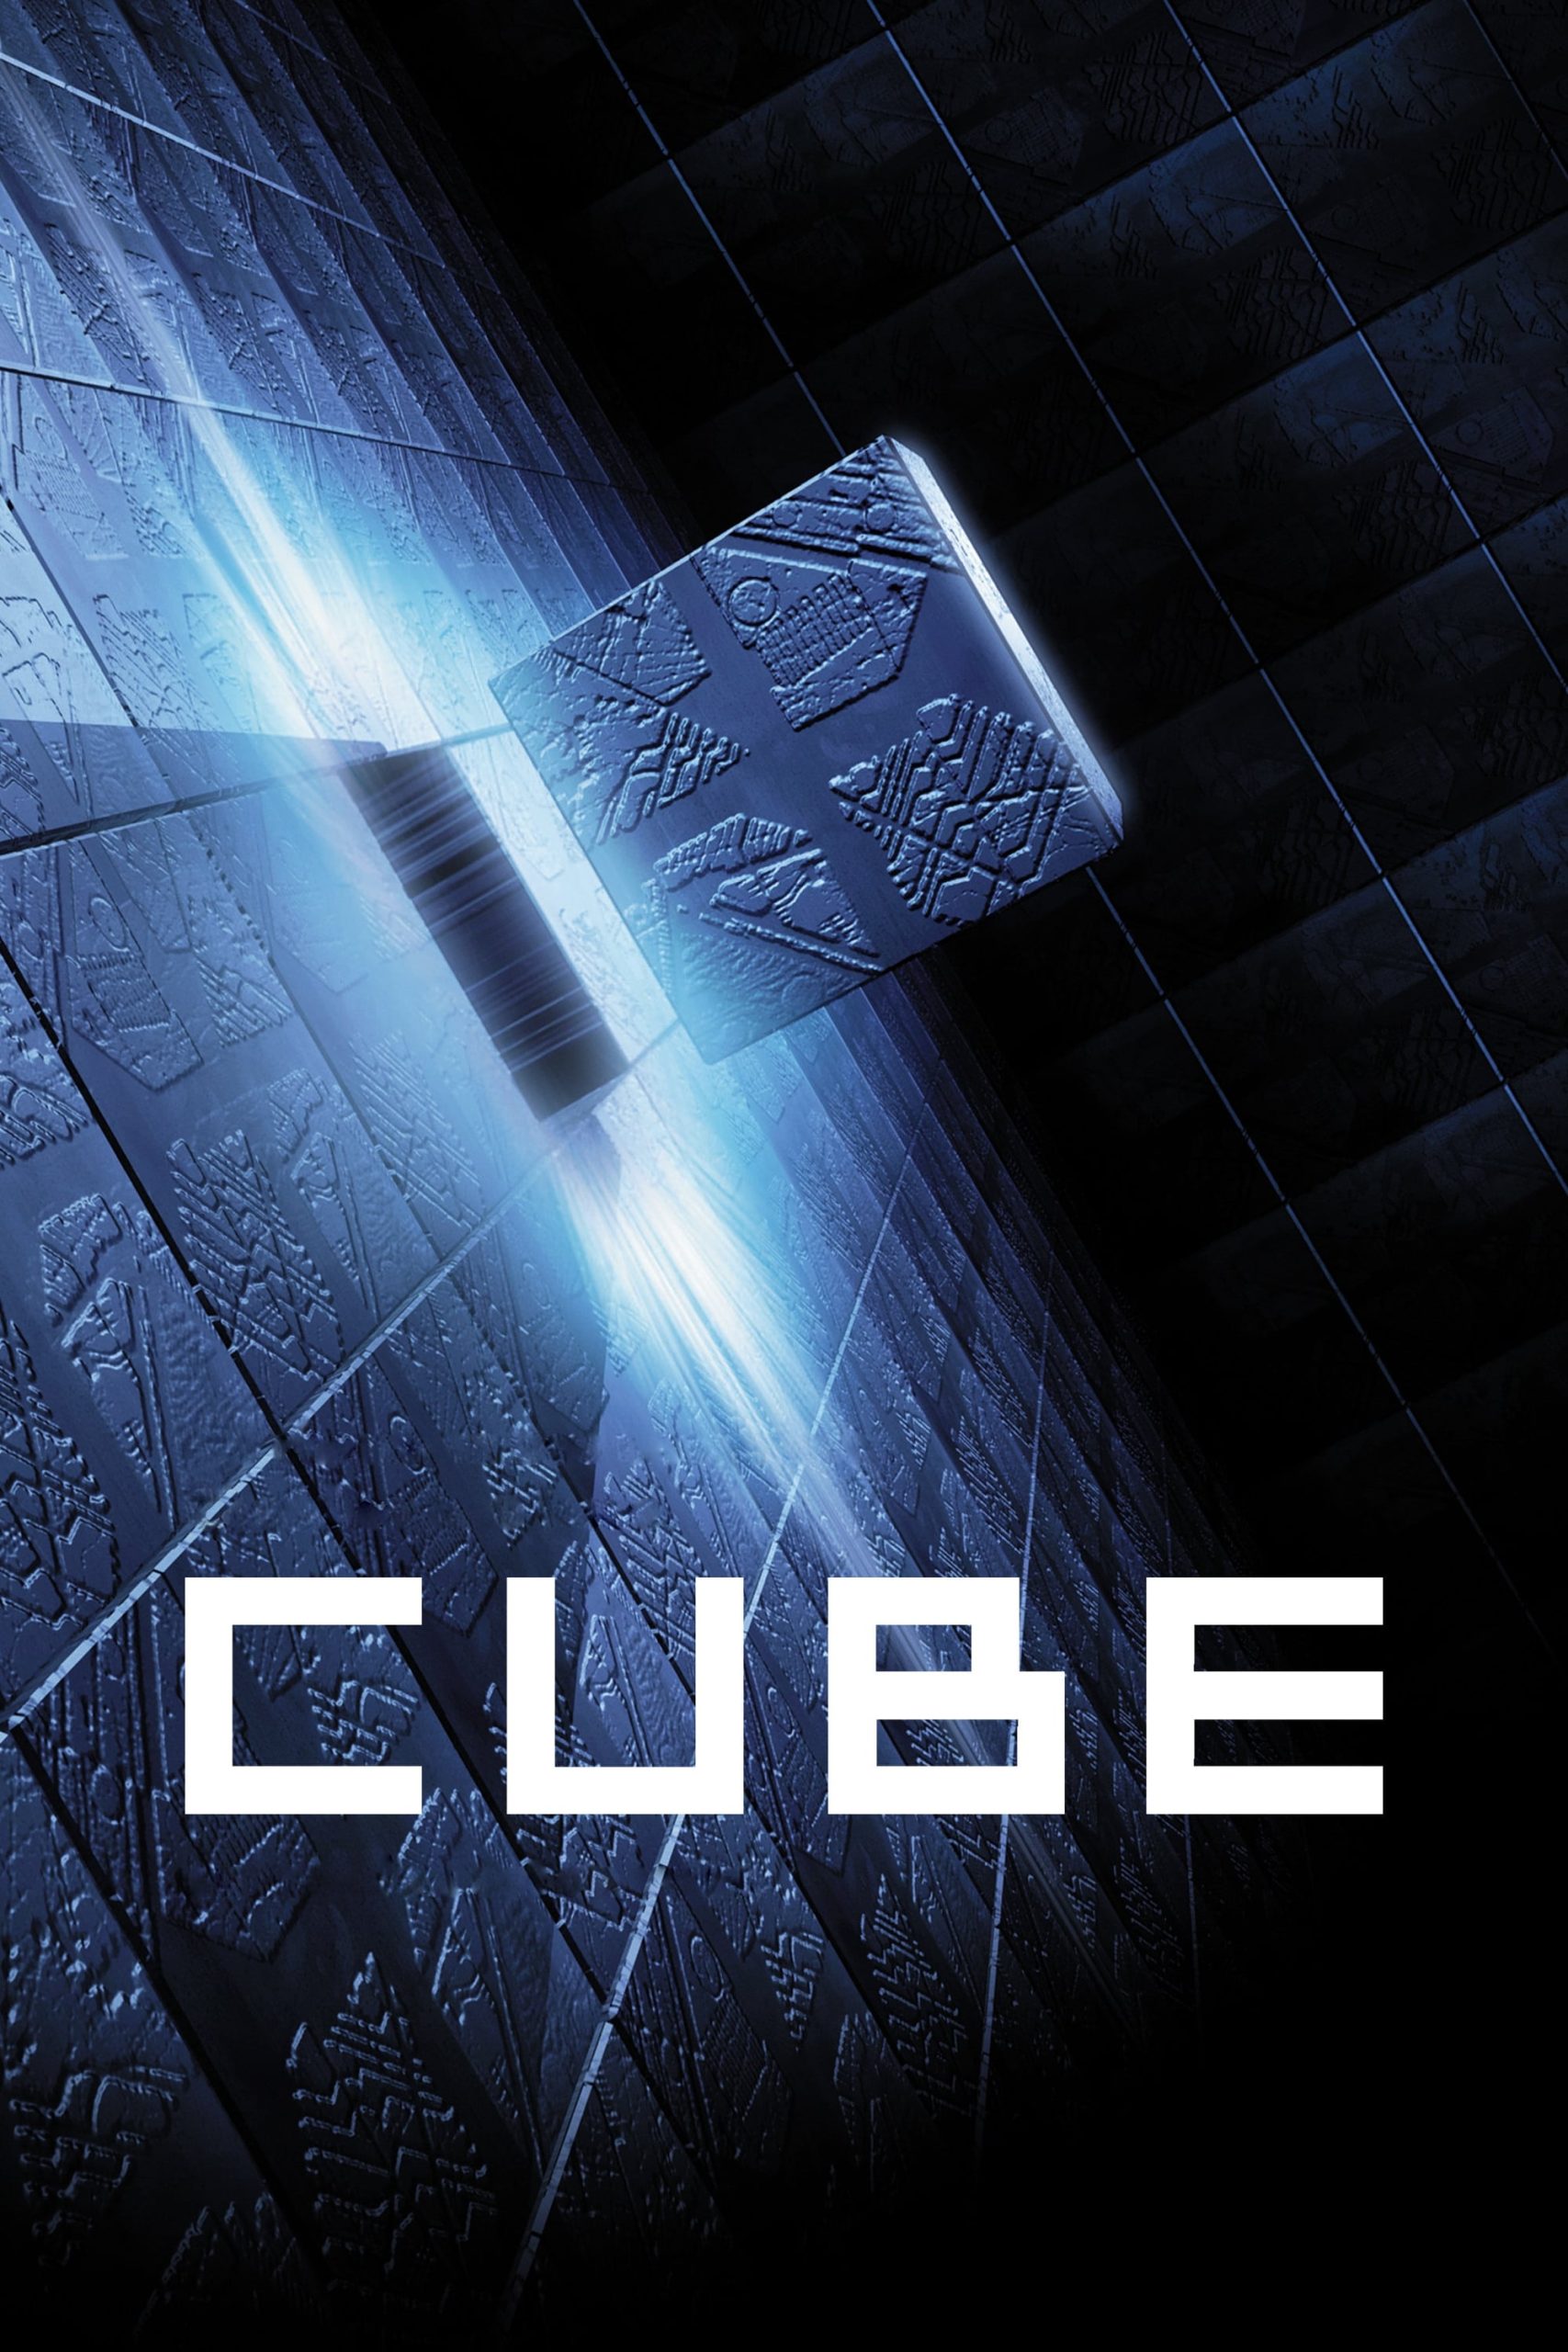 دانلود صوت دوبله فیلم Cube 1997